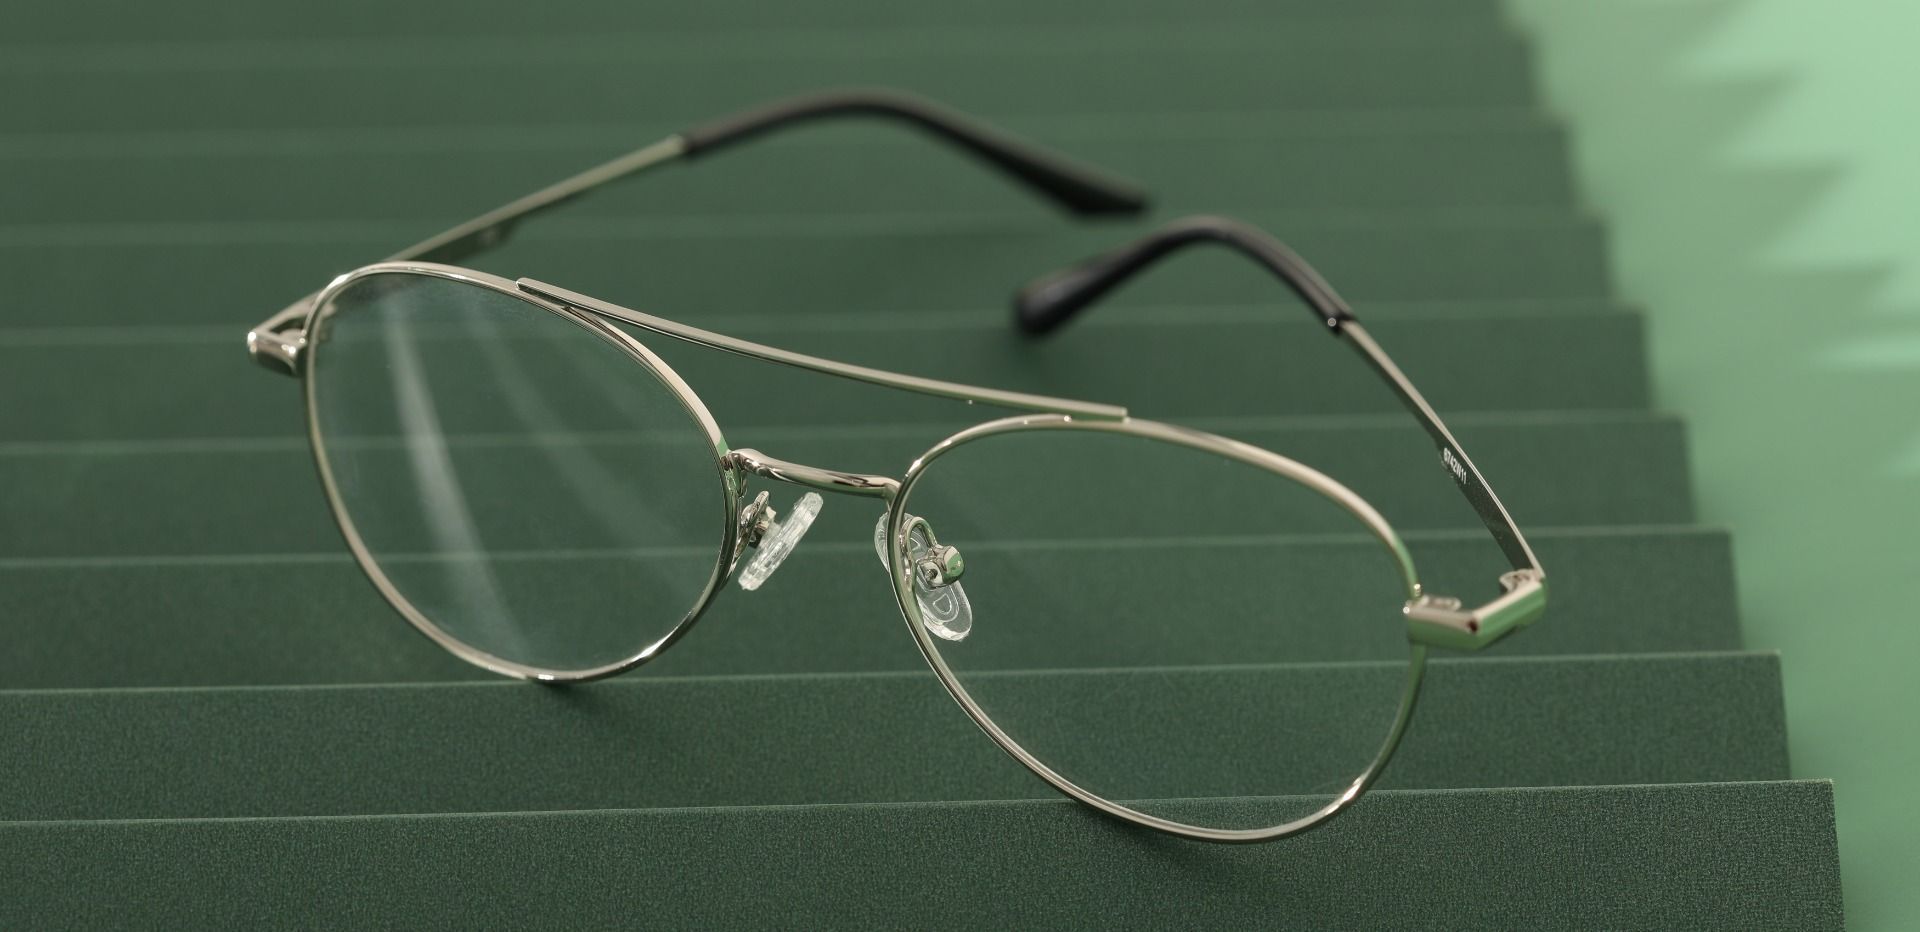 Hinton Aviator Progressive Glasses - Silver